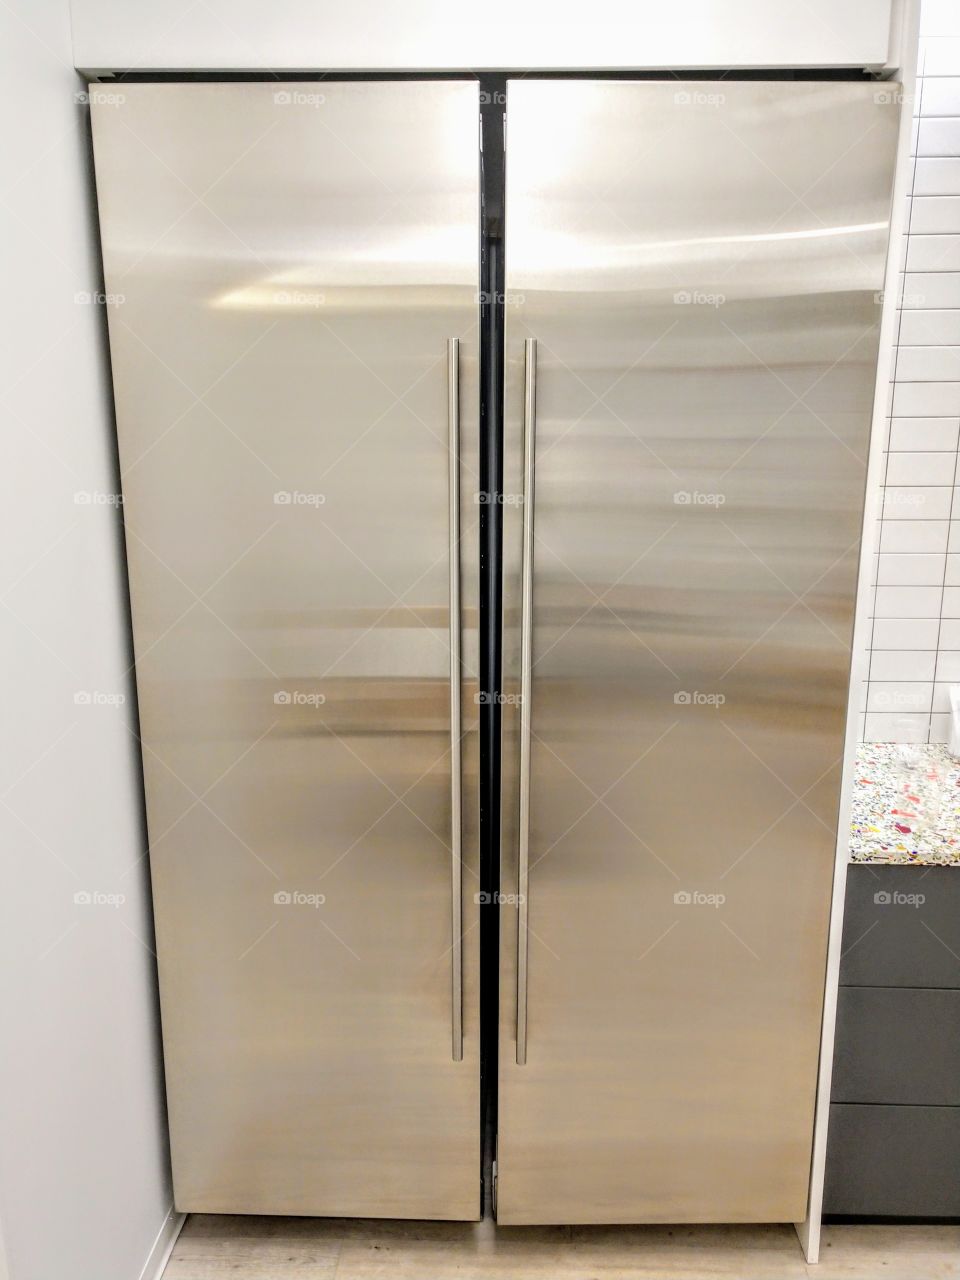 2-door stainless steel refrigerator